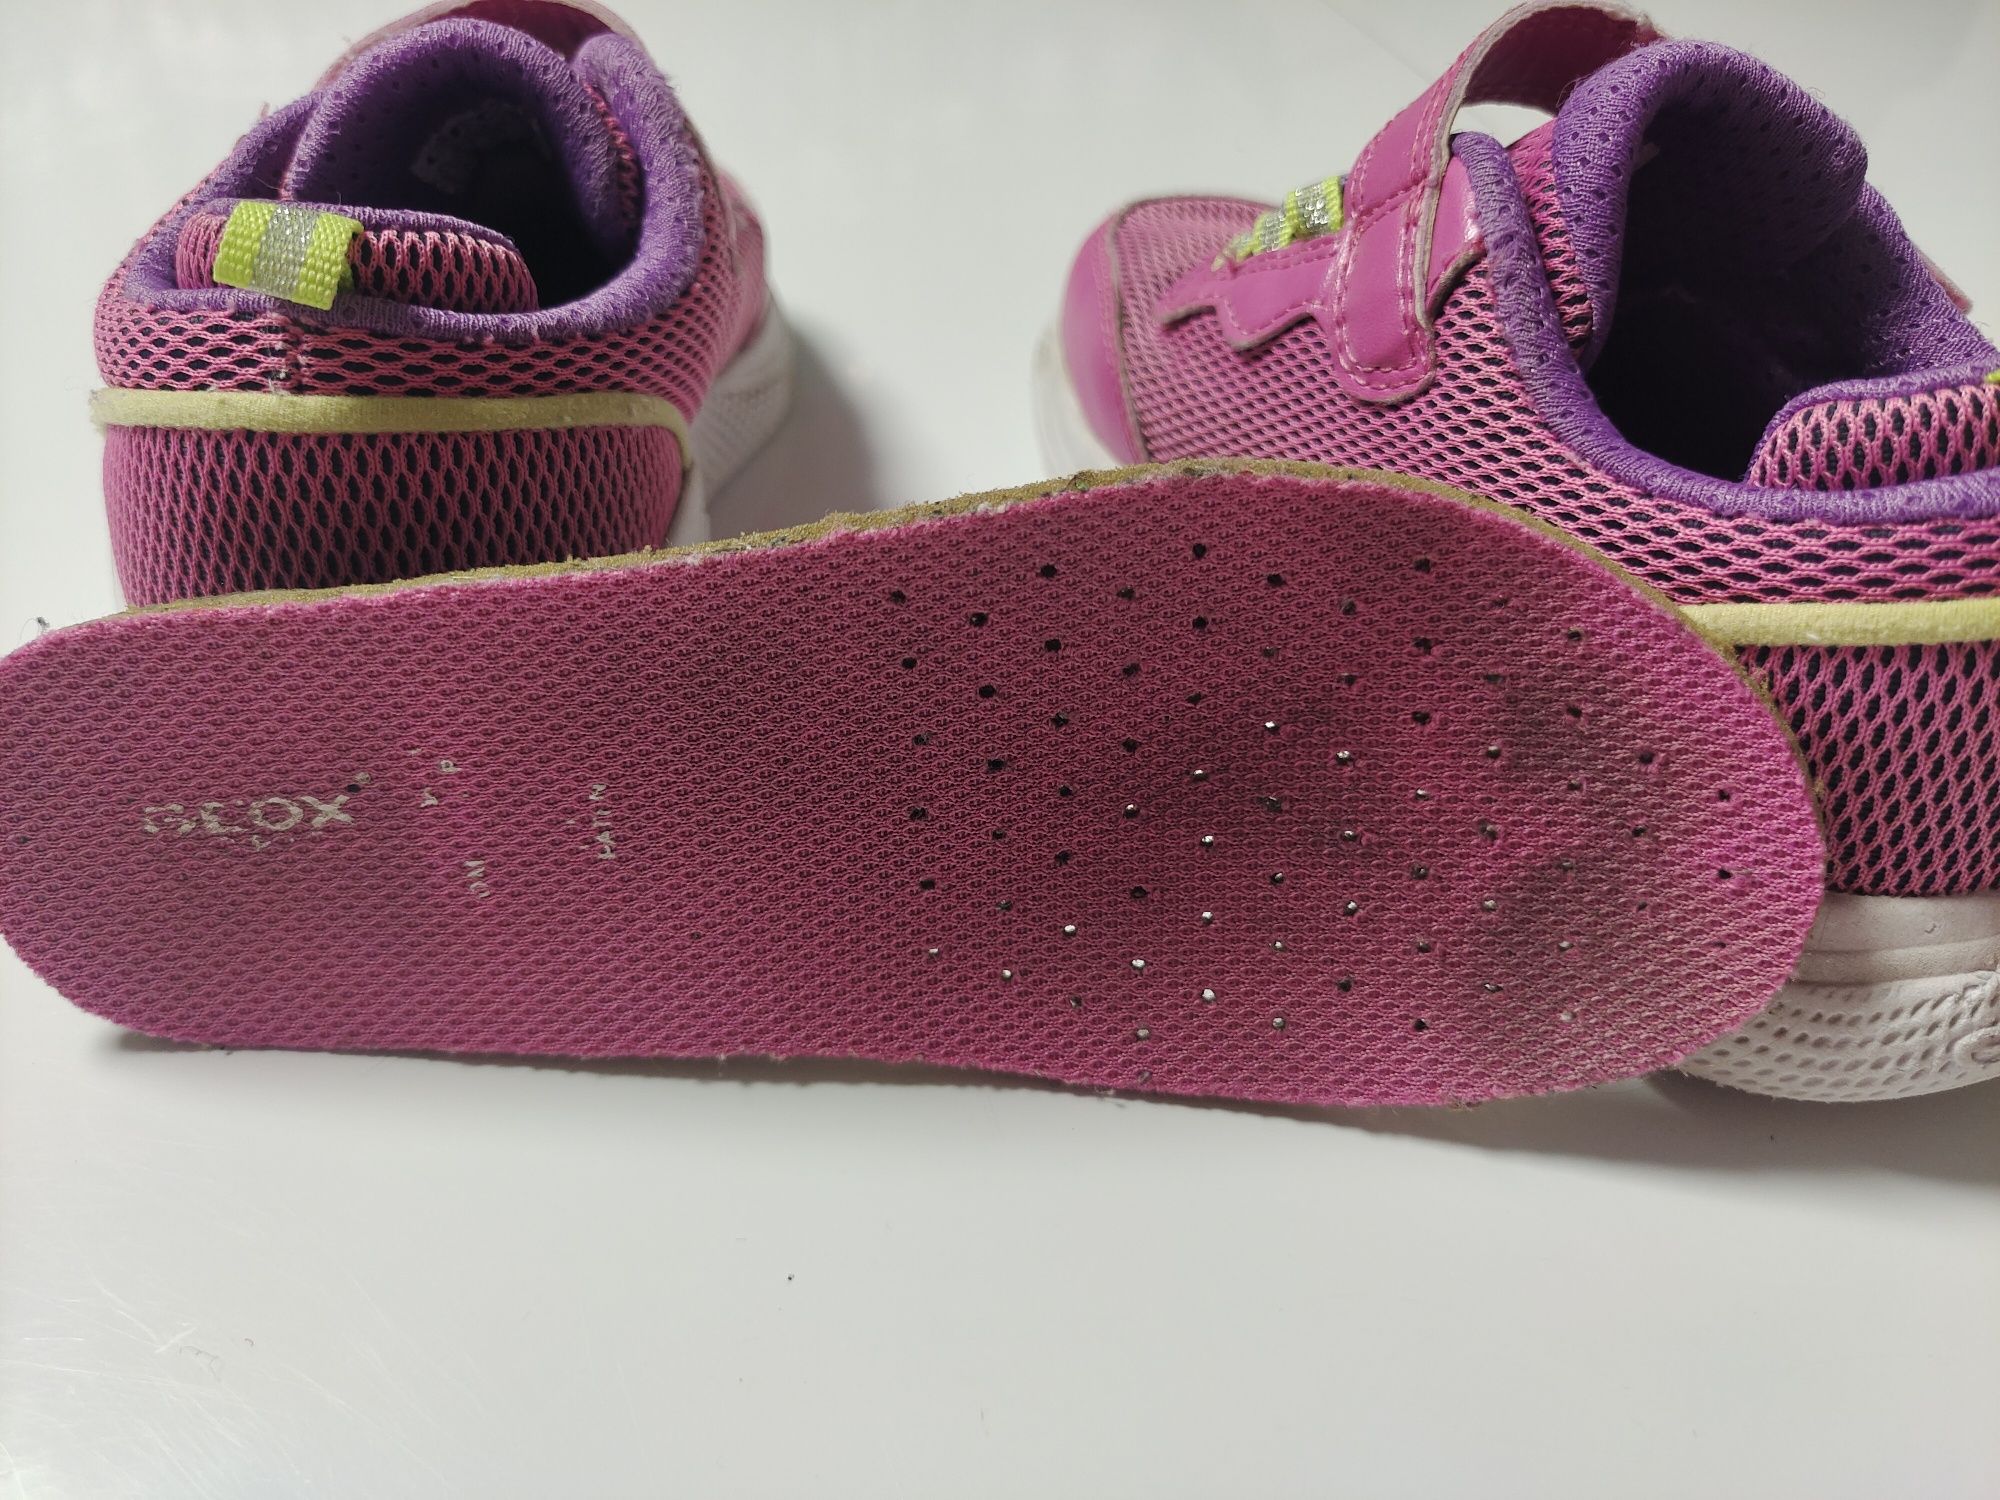 Buty, adidasy Geox, buty dla dziewczynki różowo fioletowe, buty Bartek